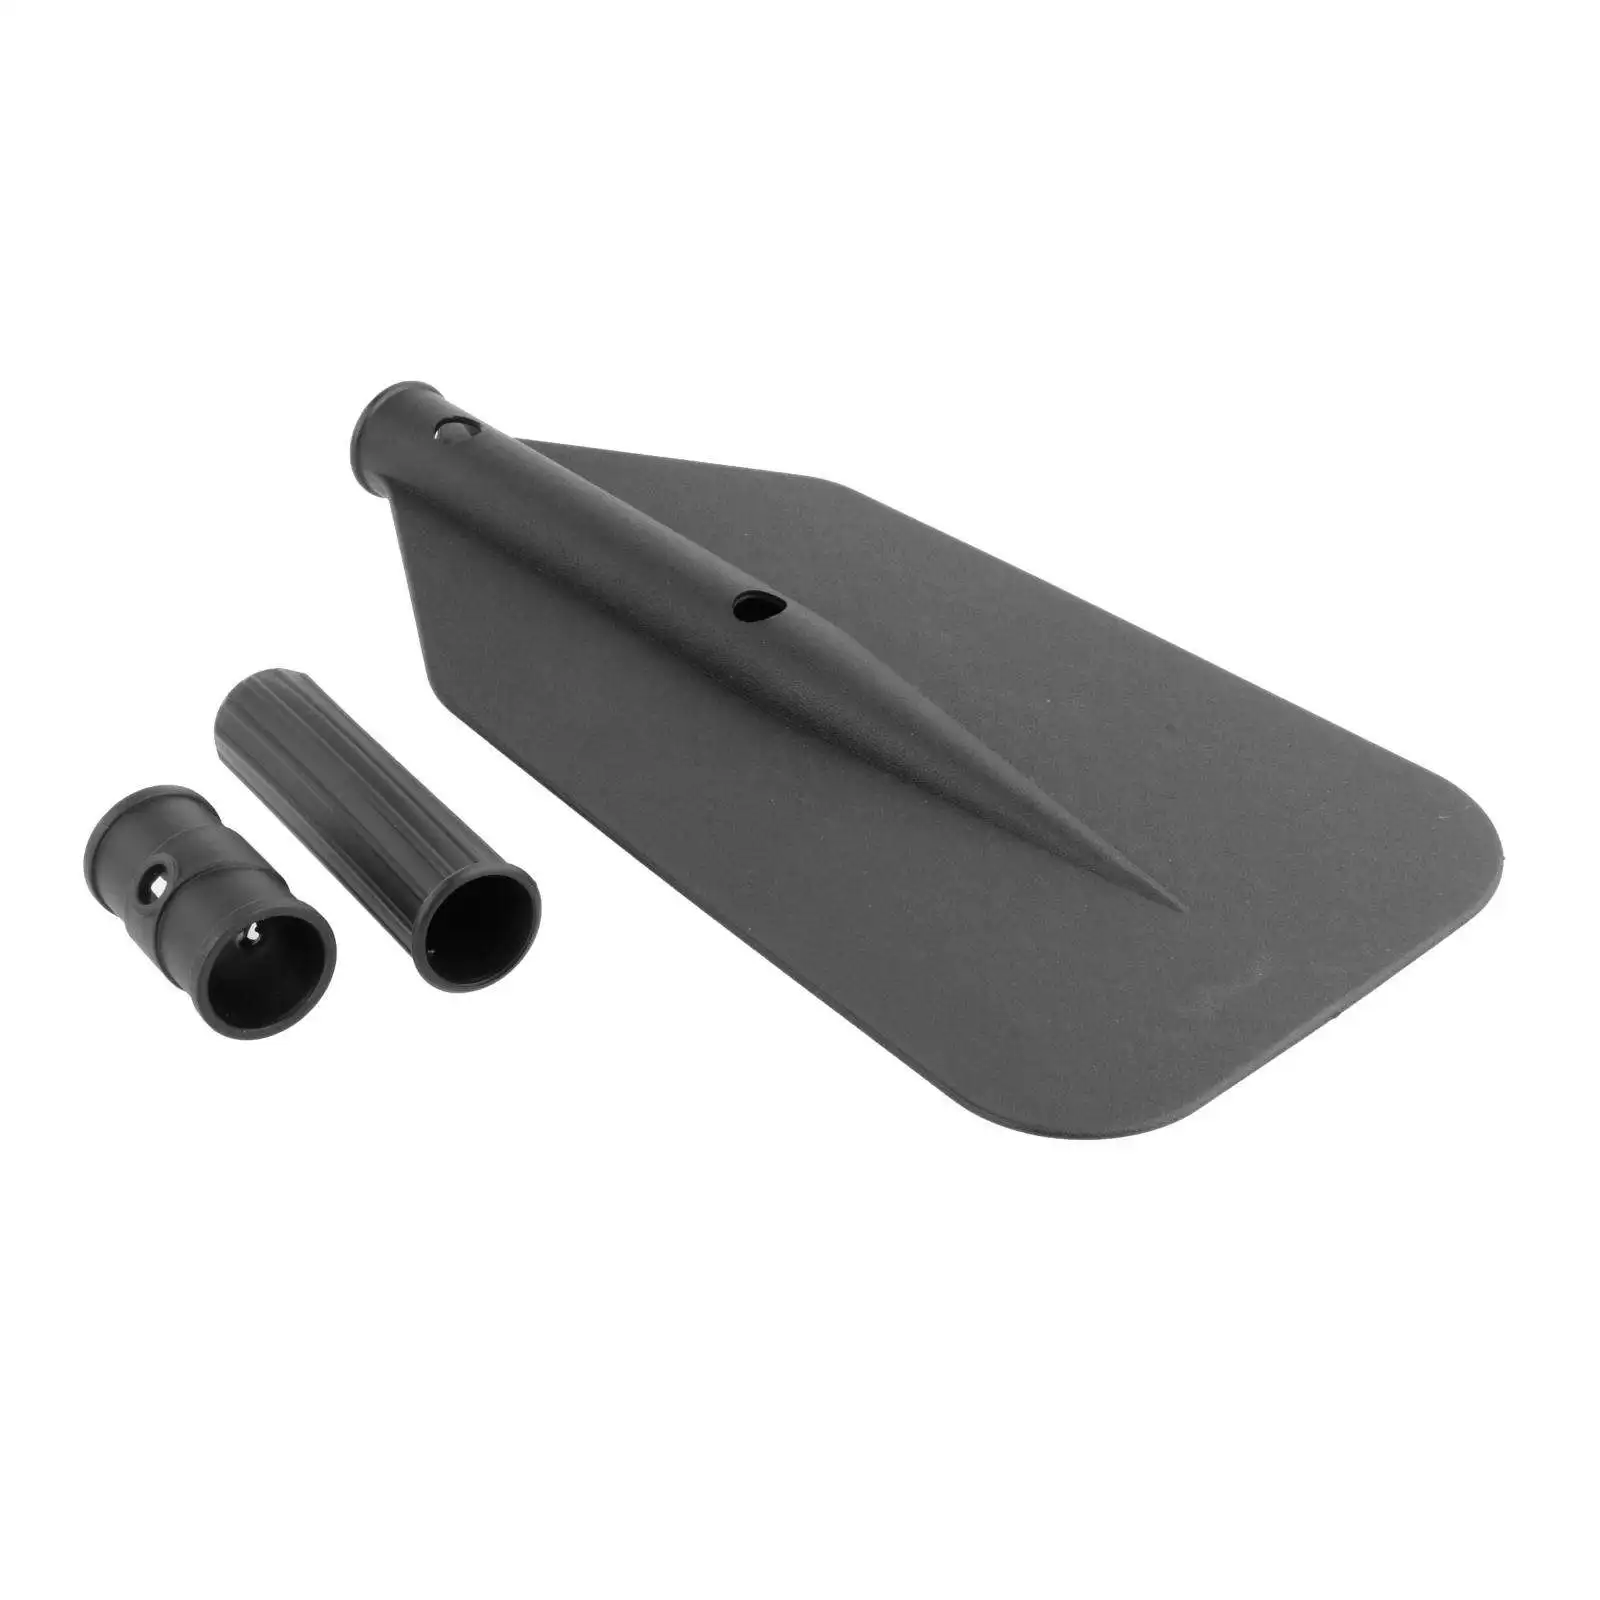 3Pcs/set Lightweight Rubber Kayak Boat Paddle Blade Leaf Accessories Black